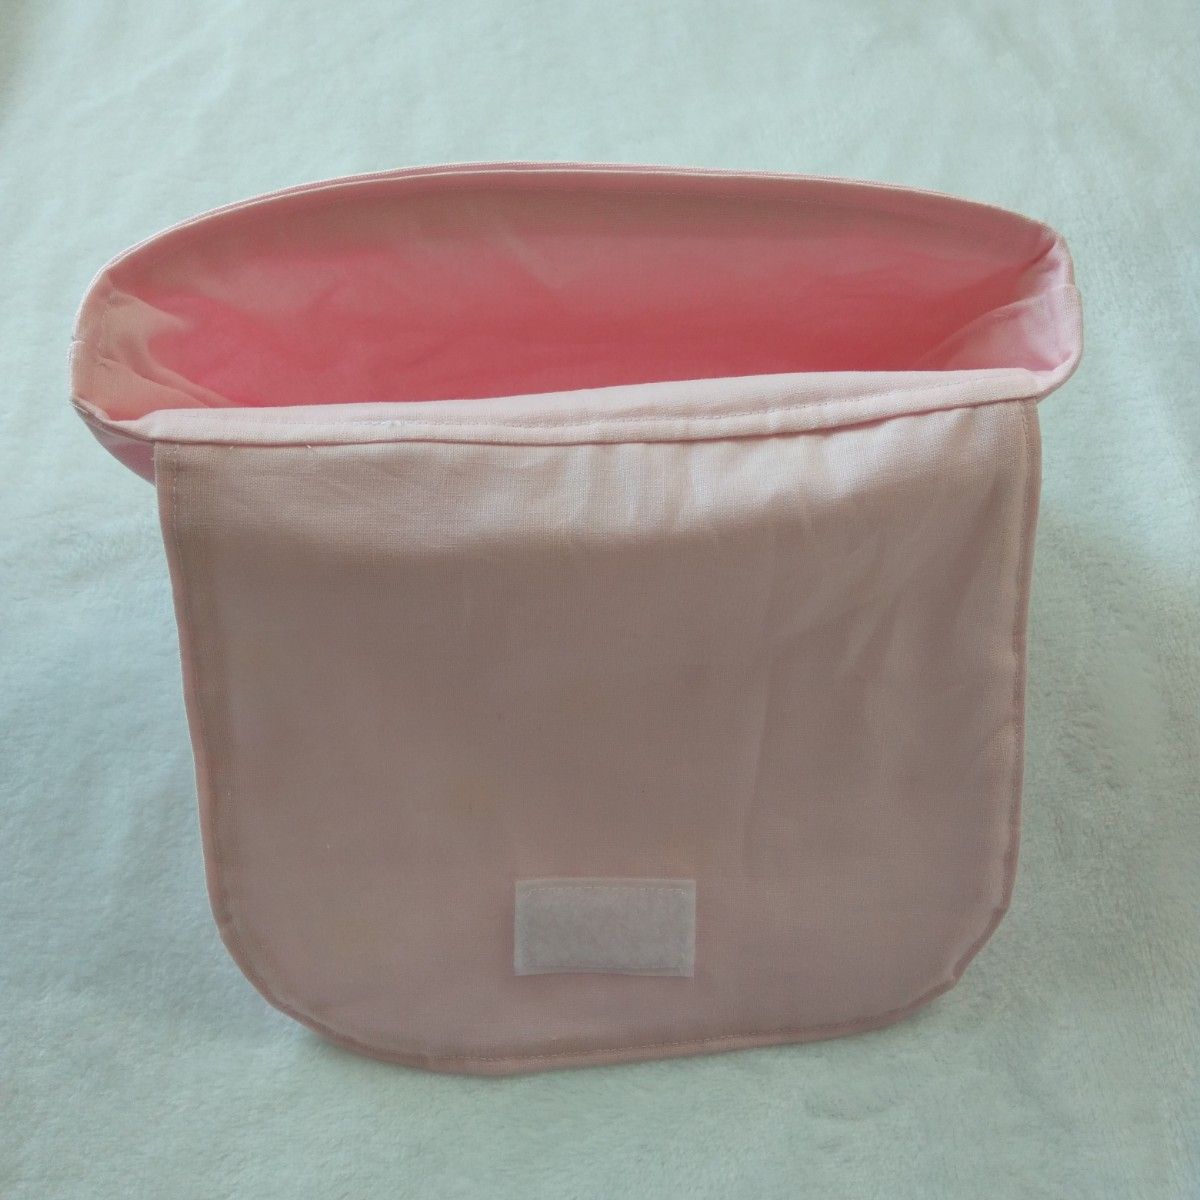 【大】横入れお弁当袋 デイジーｘさくらんぼ 女の子 ピンク キルト芯使用 ハンドメイド